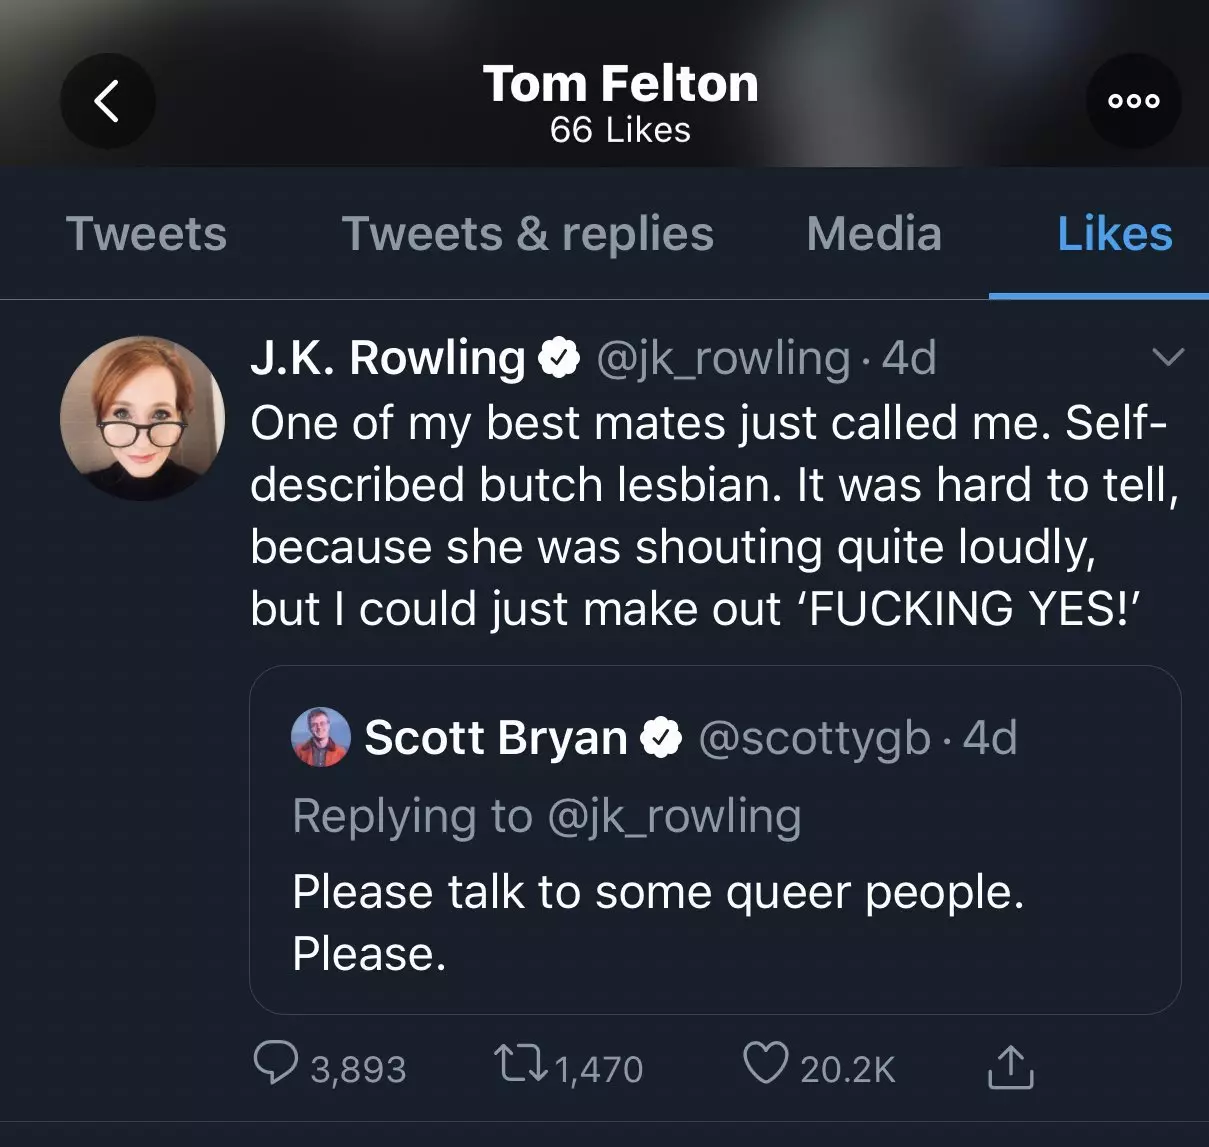 Tom Felton neamde "Ugly" fanwegen de Husky yn stipe fan Joan Rowling